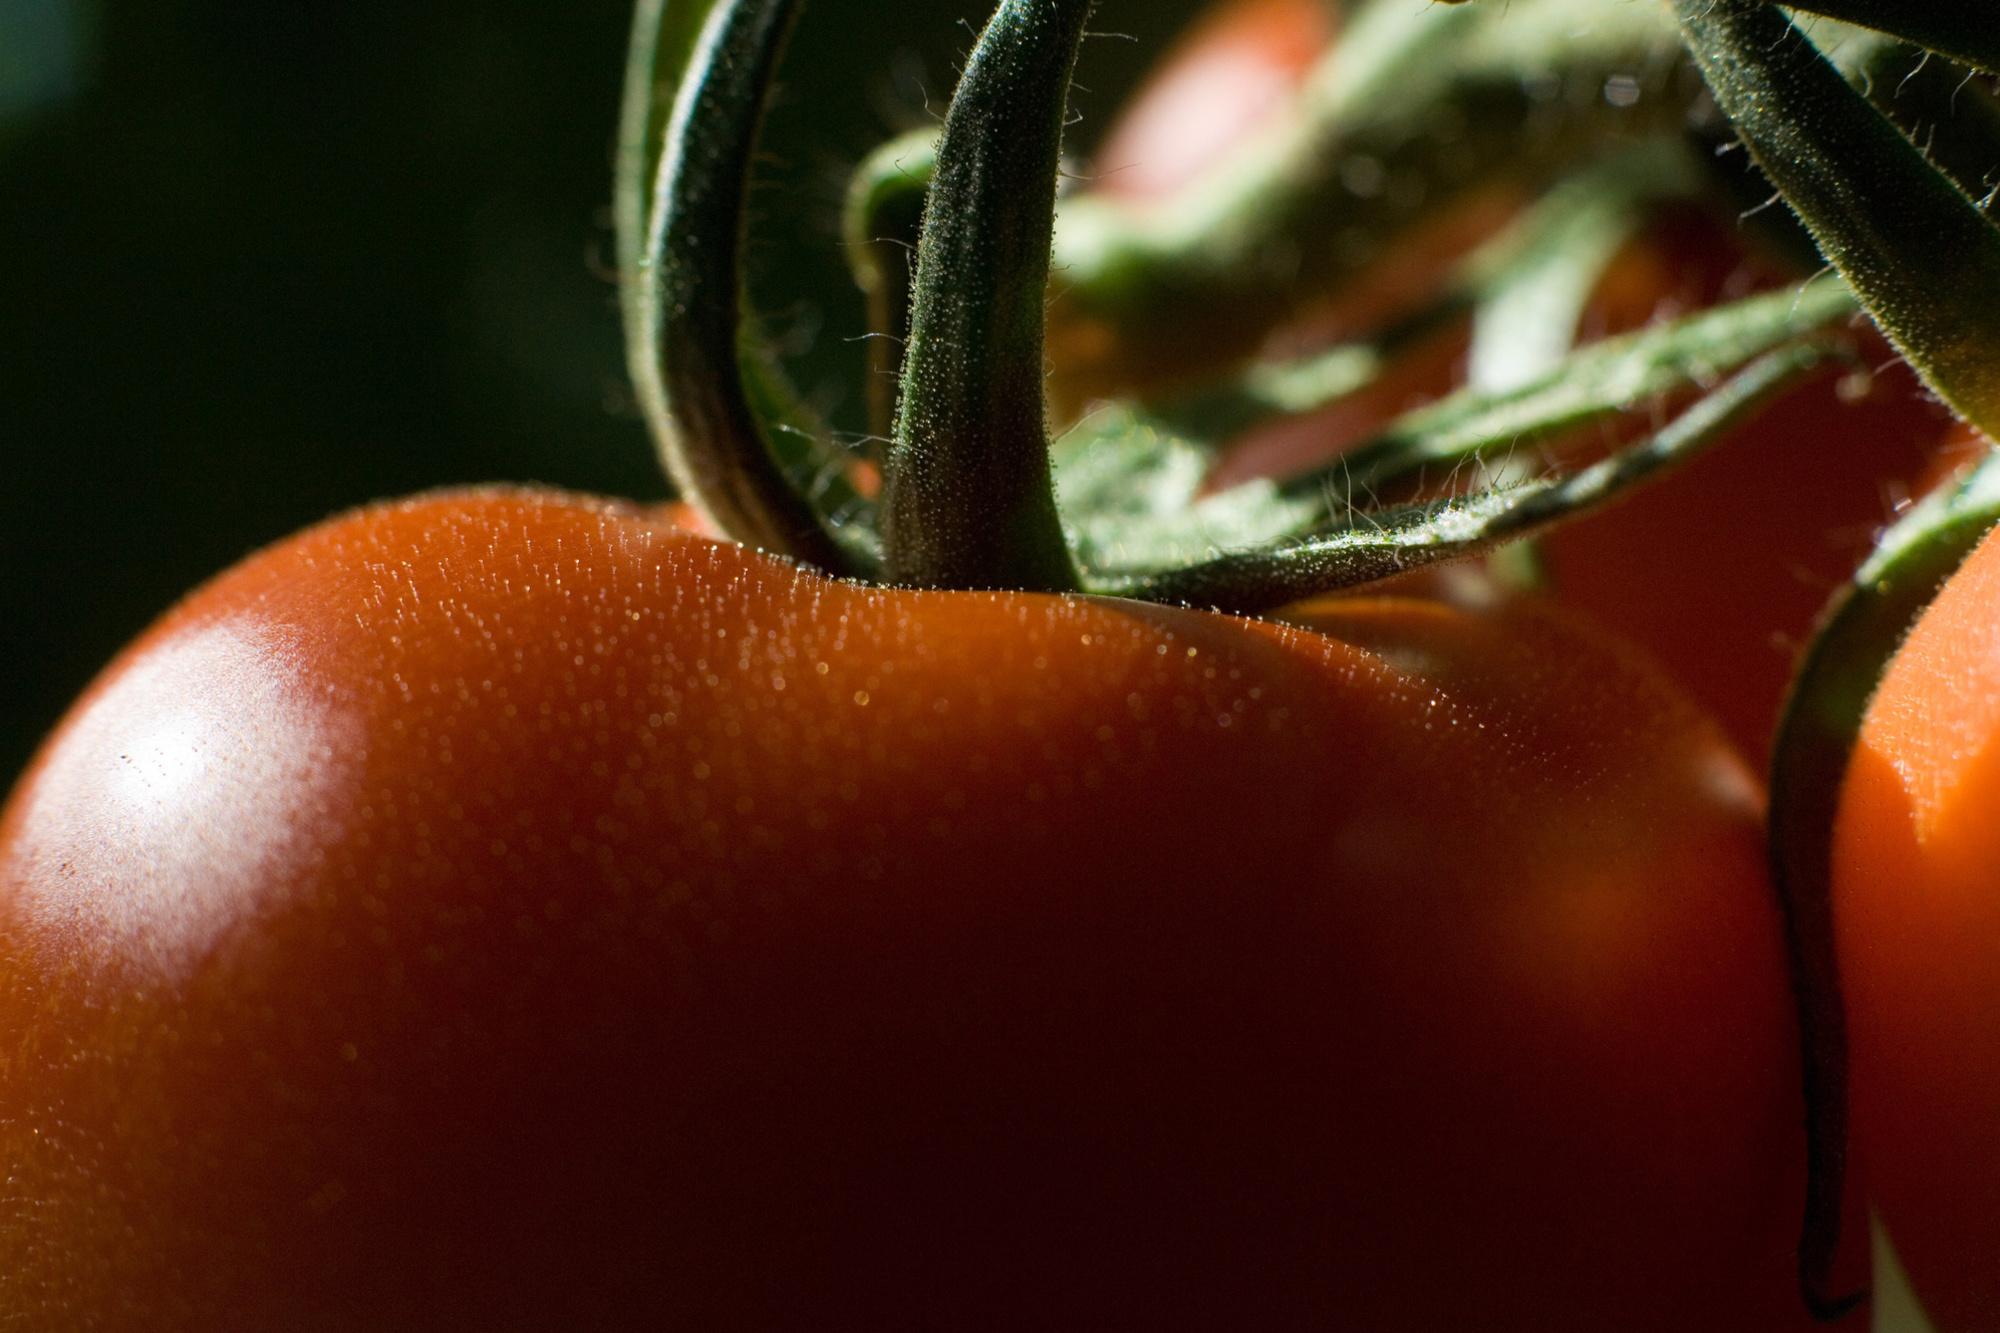 'Tomatenconcentraat is het toegankelijkste industriële product van het kapitalisme.'